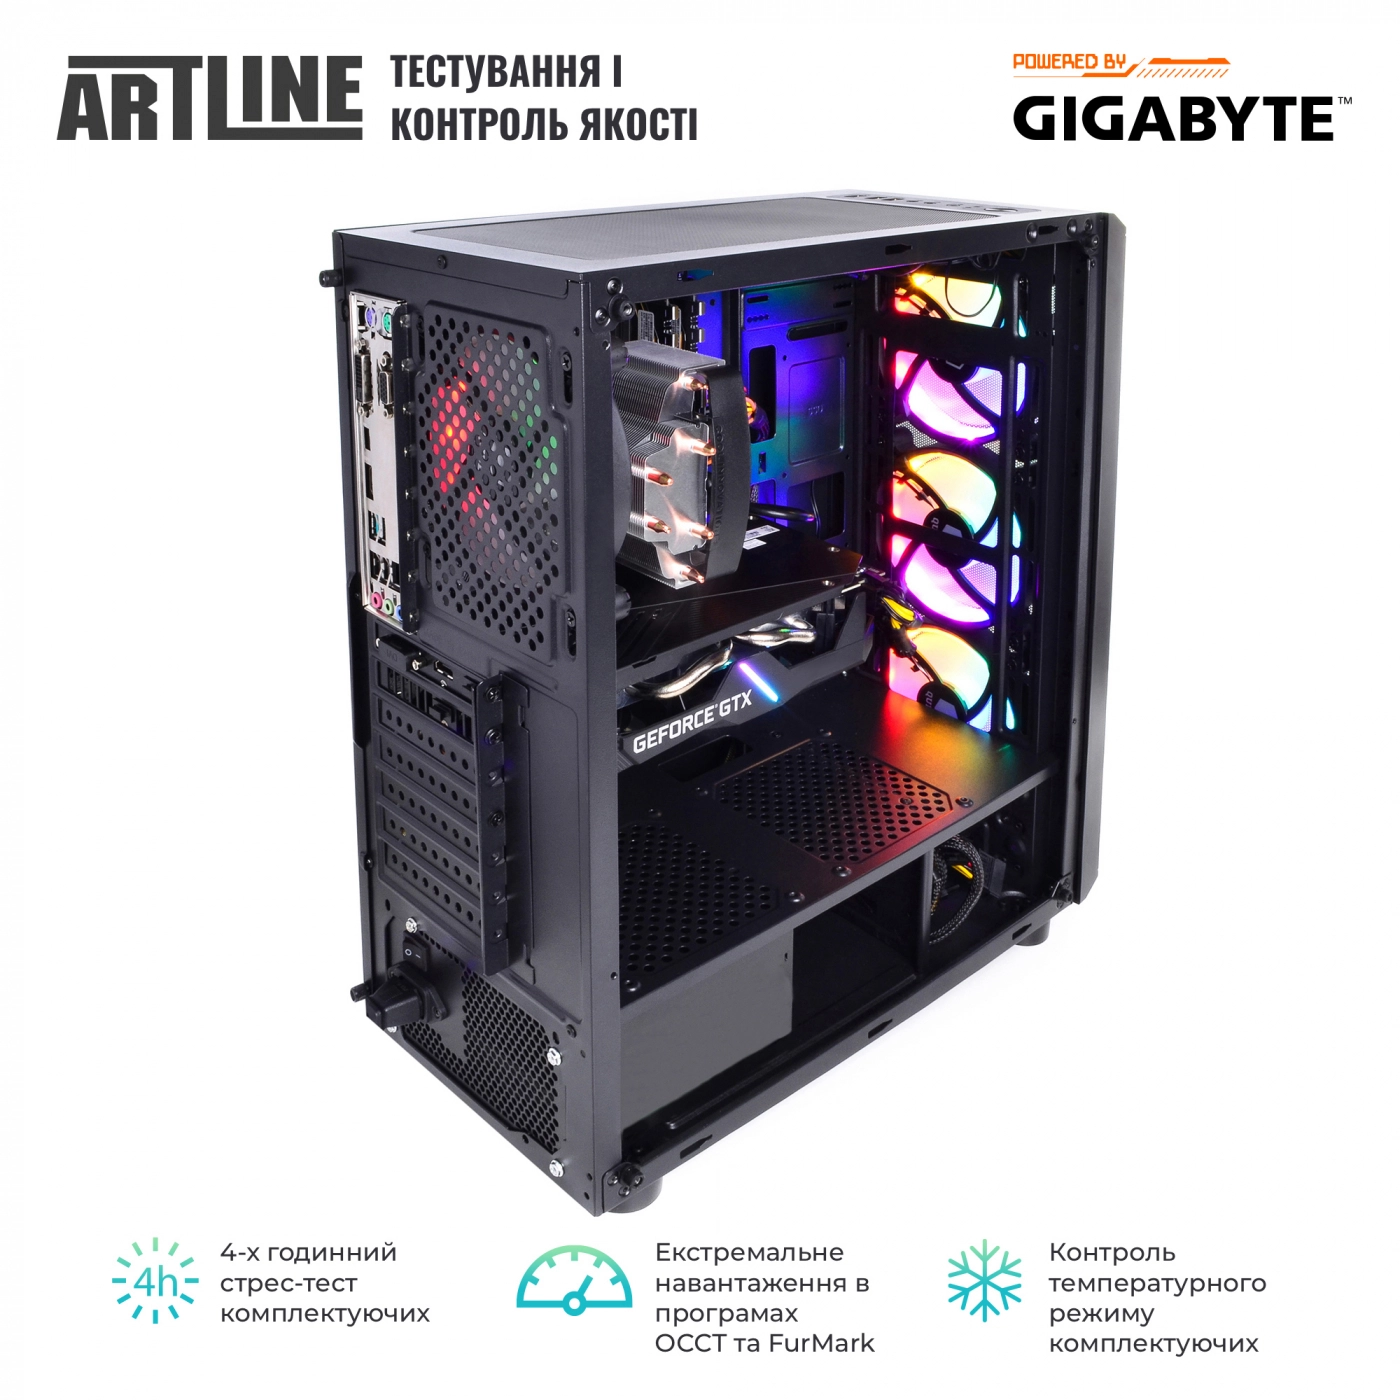 Купить Компьютер ARTLINE Gaming X51v07 - фото 7